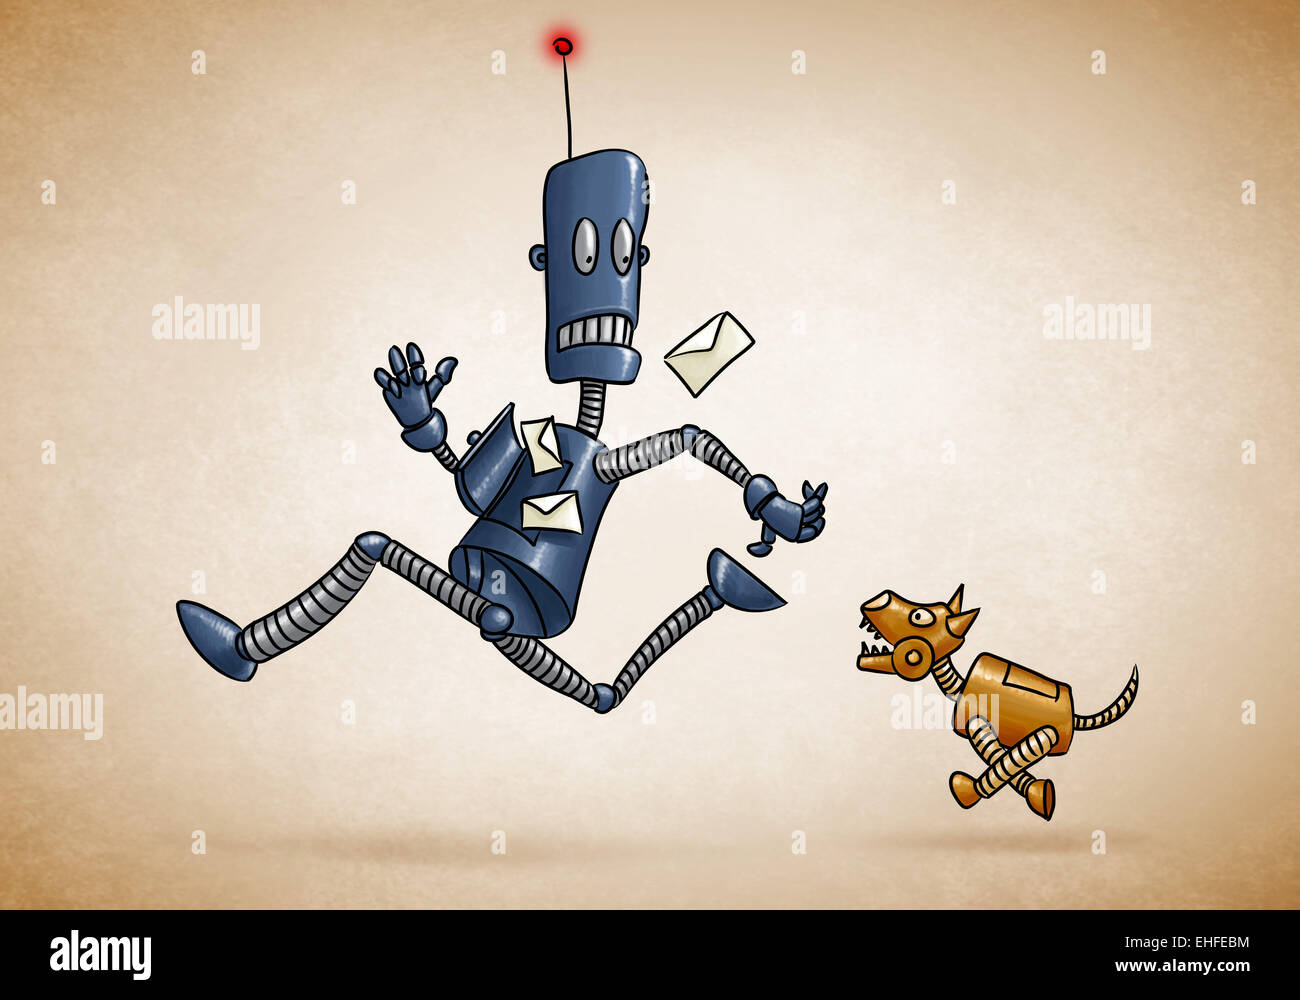 Postman Robot and mechanical dog Stock Photo